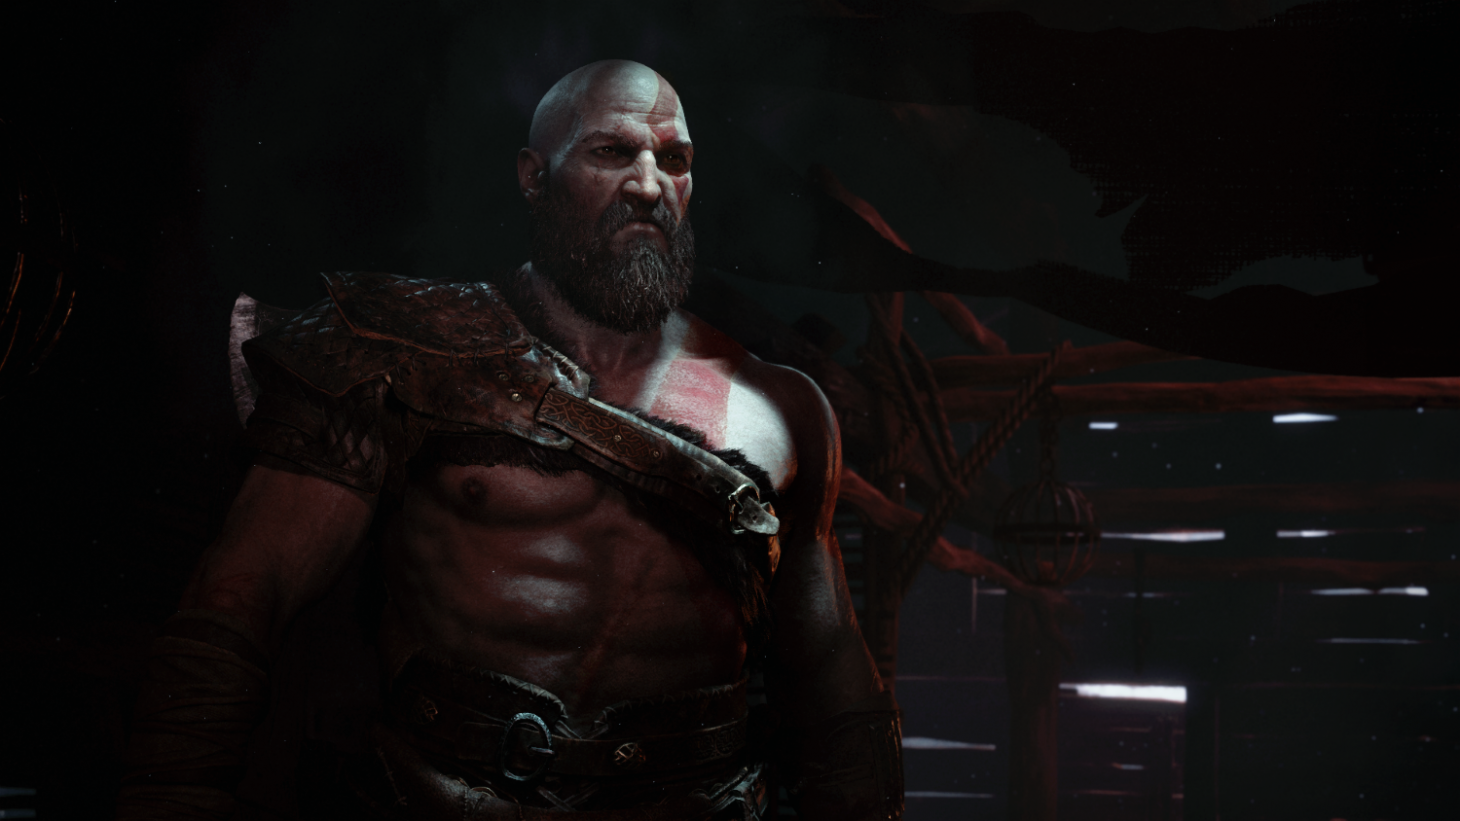 God of War: Ragnarok (PS4/PS5) - Trailer - PlayStation Showcase